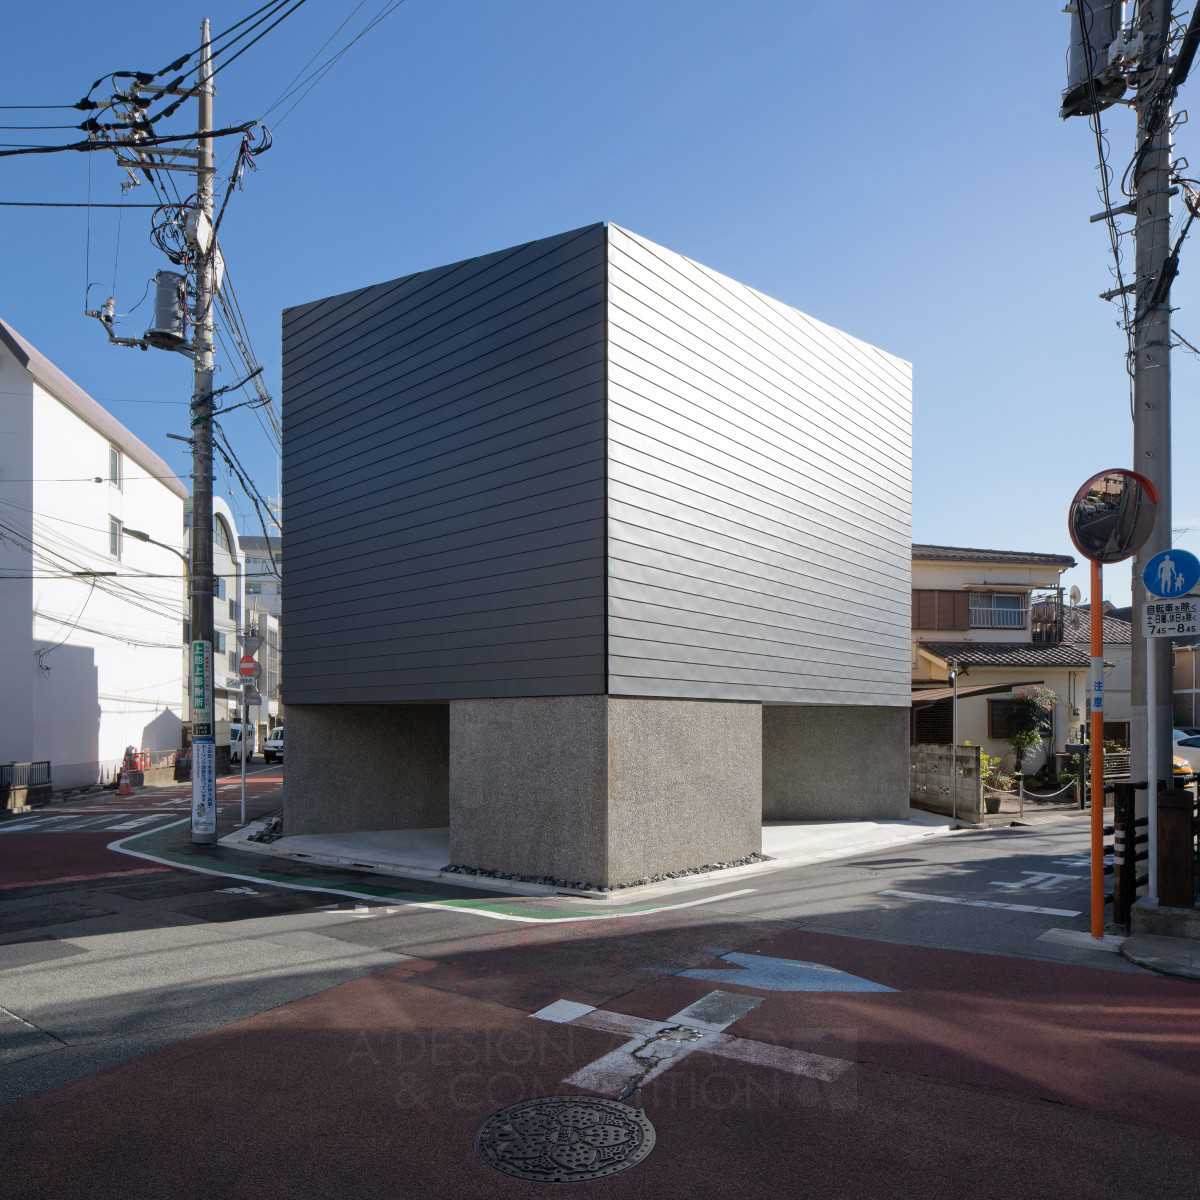 Murakoshi : Une Maison Urbaine Intégrant les Eaux de Crue dans son Design